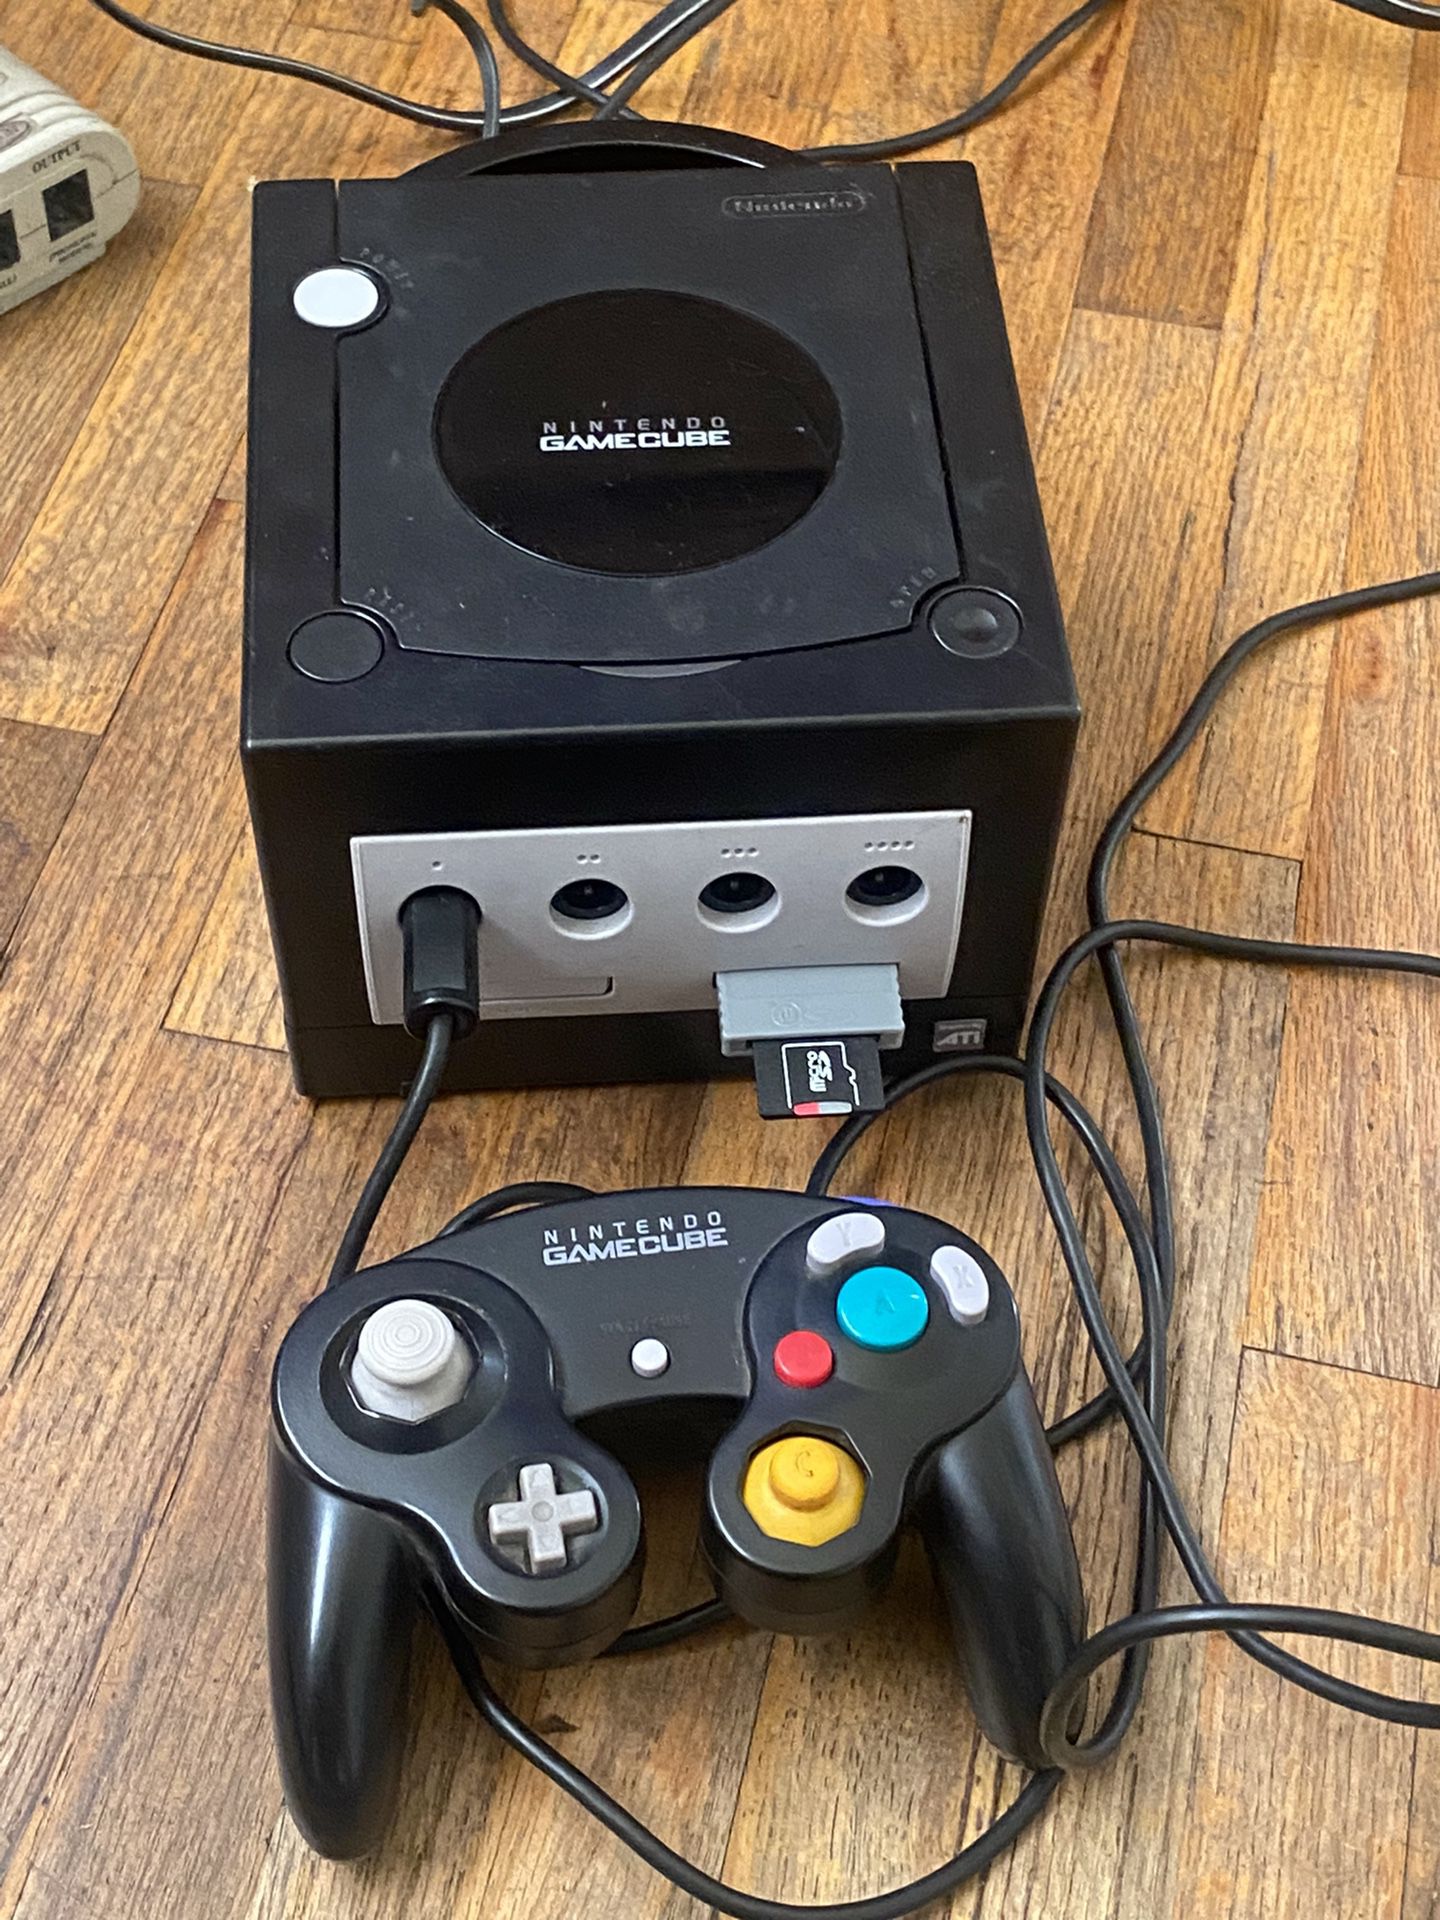 Modded Nintendo GameCube 